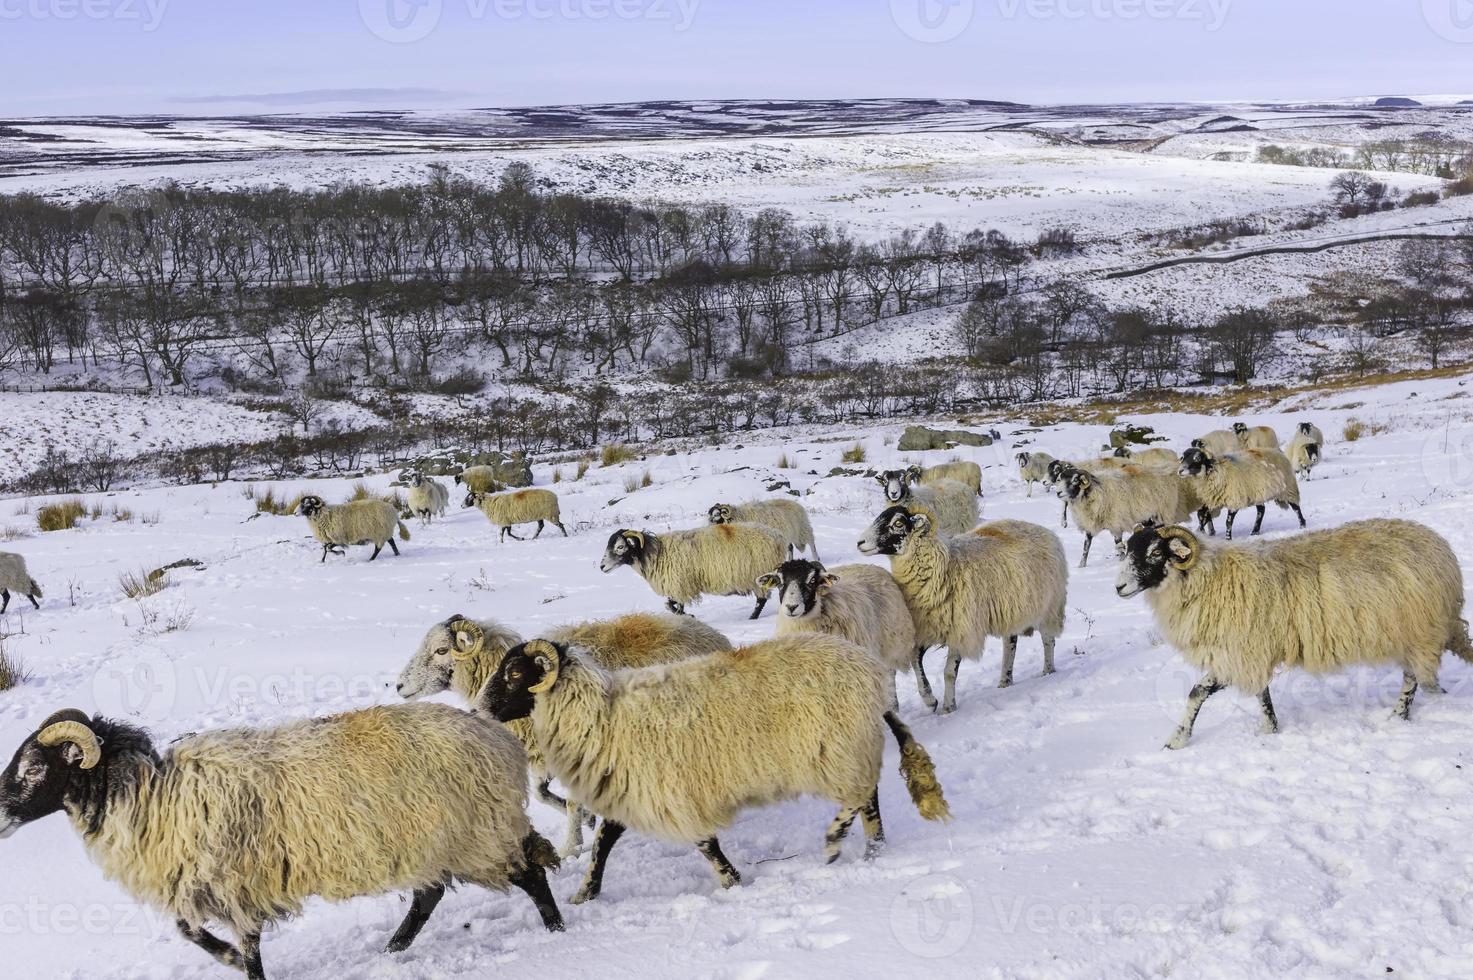 Las ovejas buscan forraje después de la tormenta de nieve, Yorkshire, Reino Unido. foto